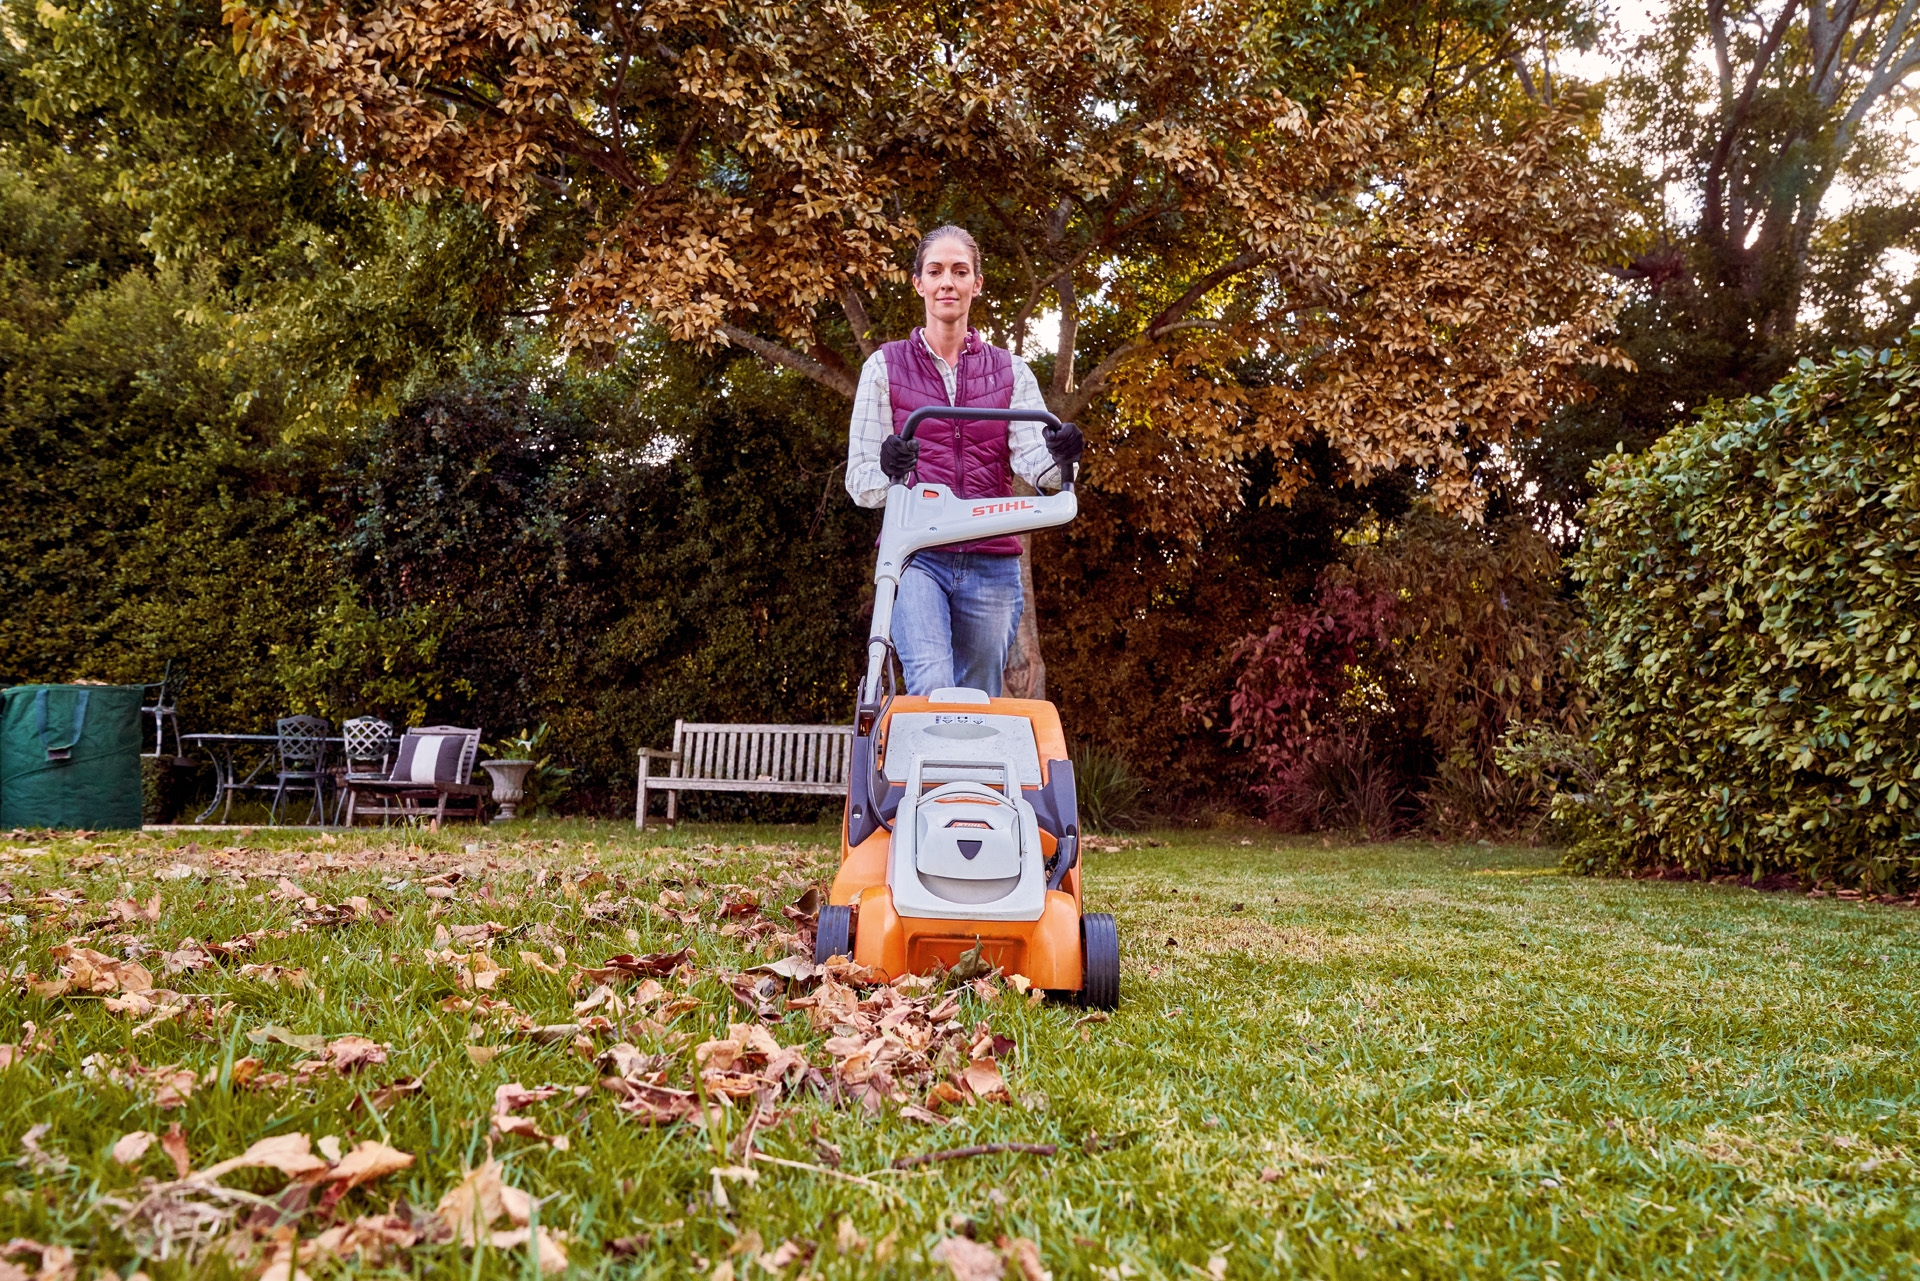 Frau betreibt mit STIHL Akku-Rasenmäher RMA 339 C in einem Garten Rasenpflege im Herbst